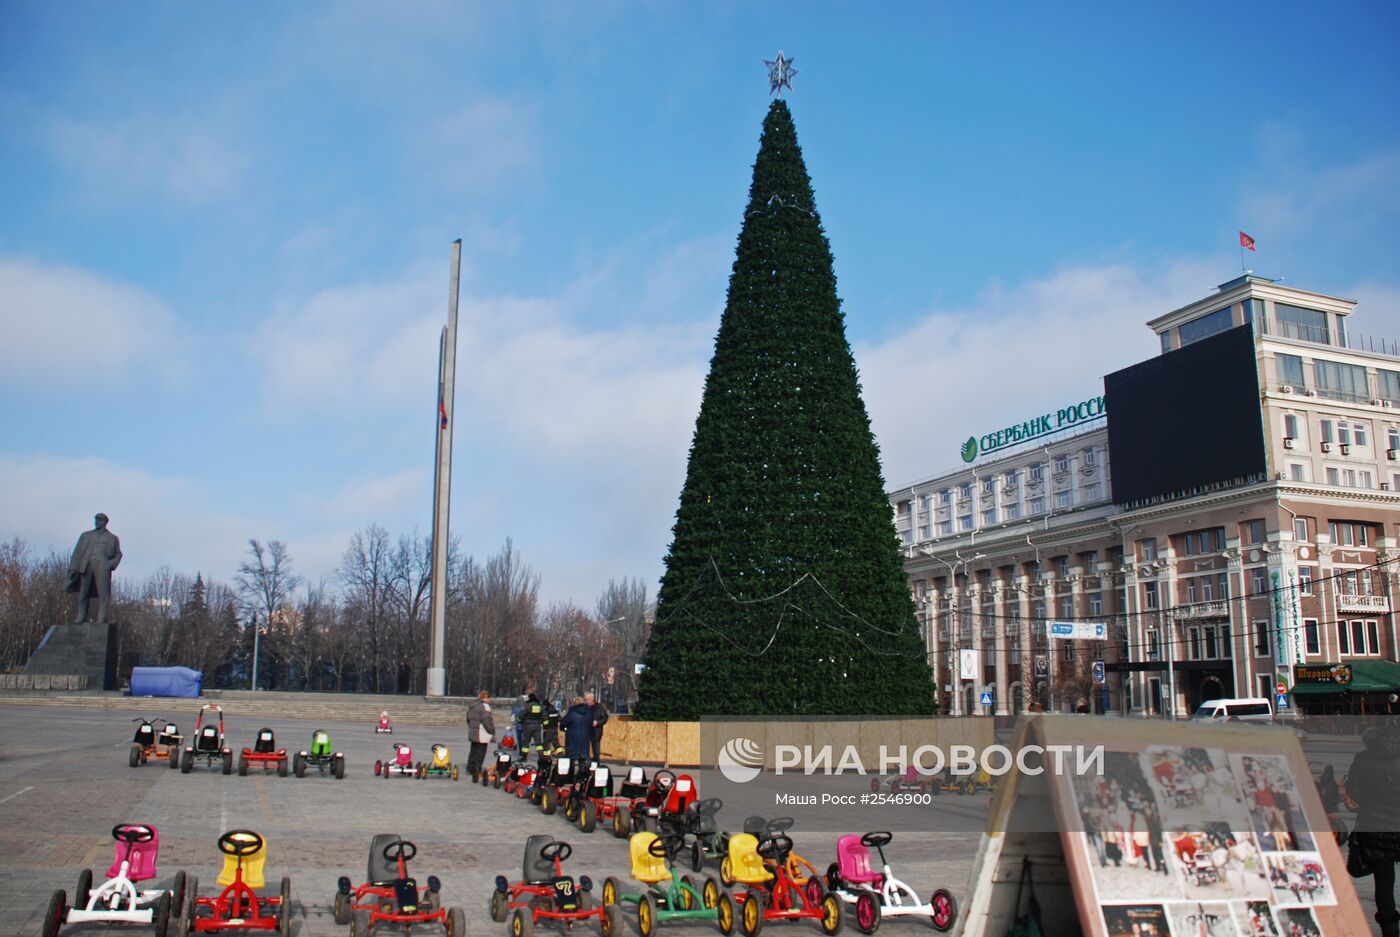 Главная новогодняя елка Донецка